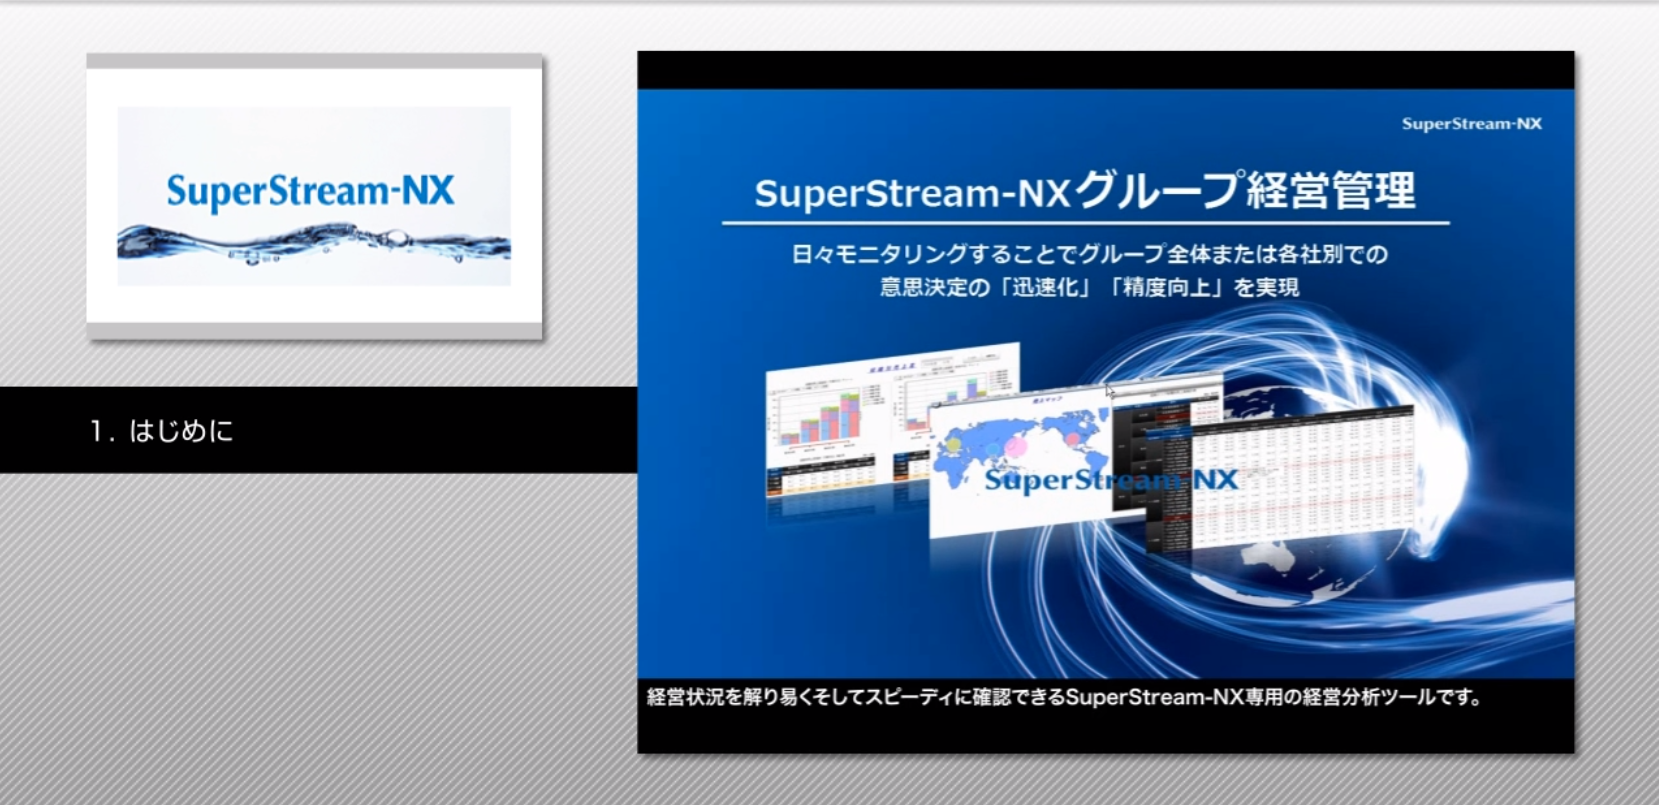 SuperStream-NX グループ経営管理